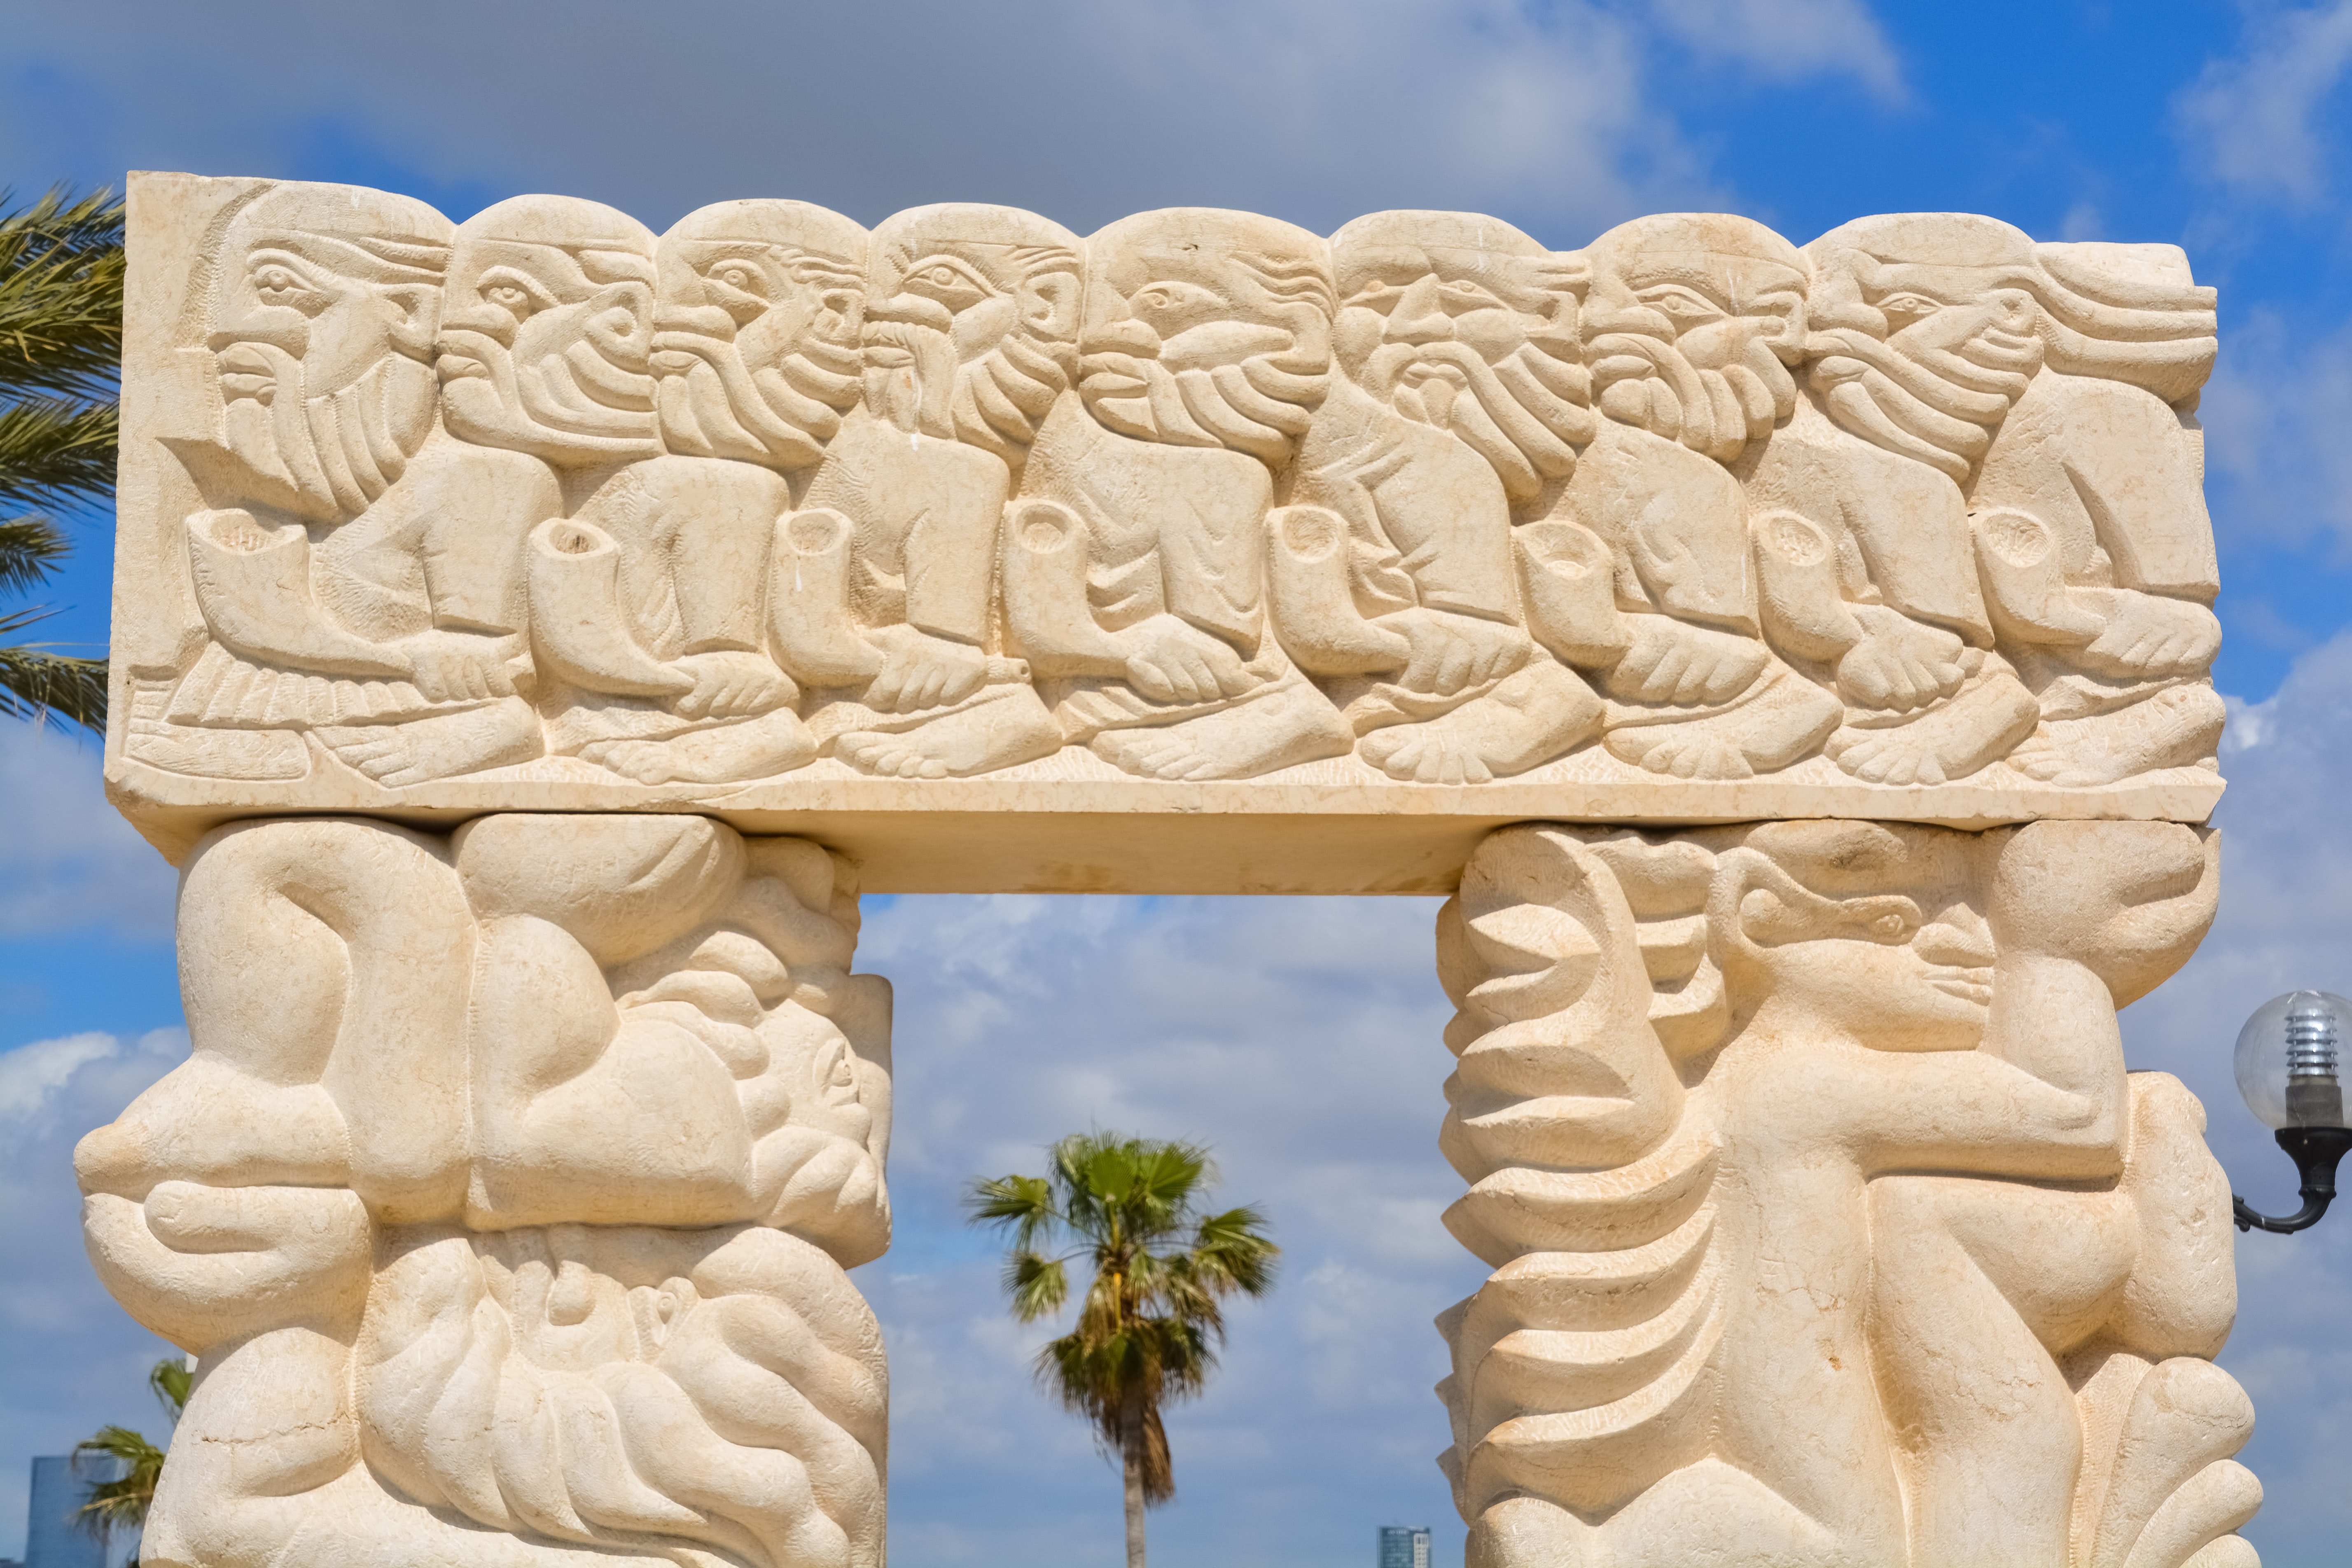 The Gate of Faith by Daniel Kafri, Jaffa, Israel